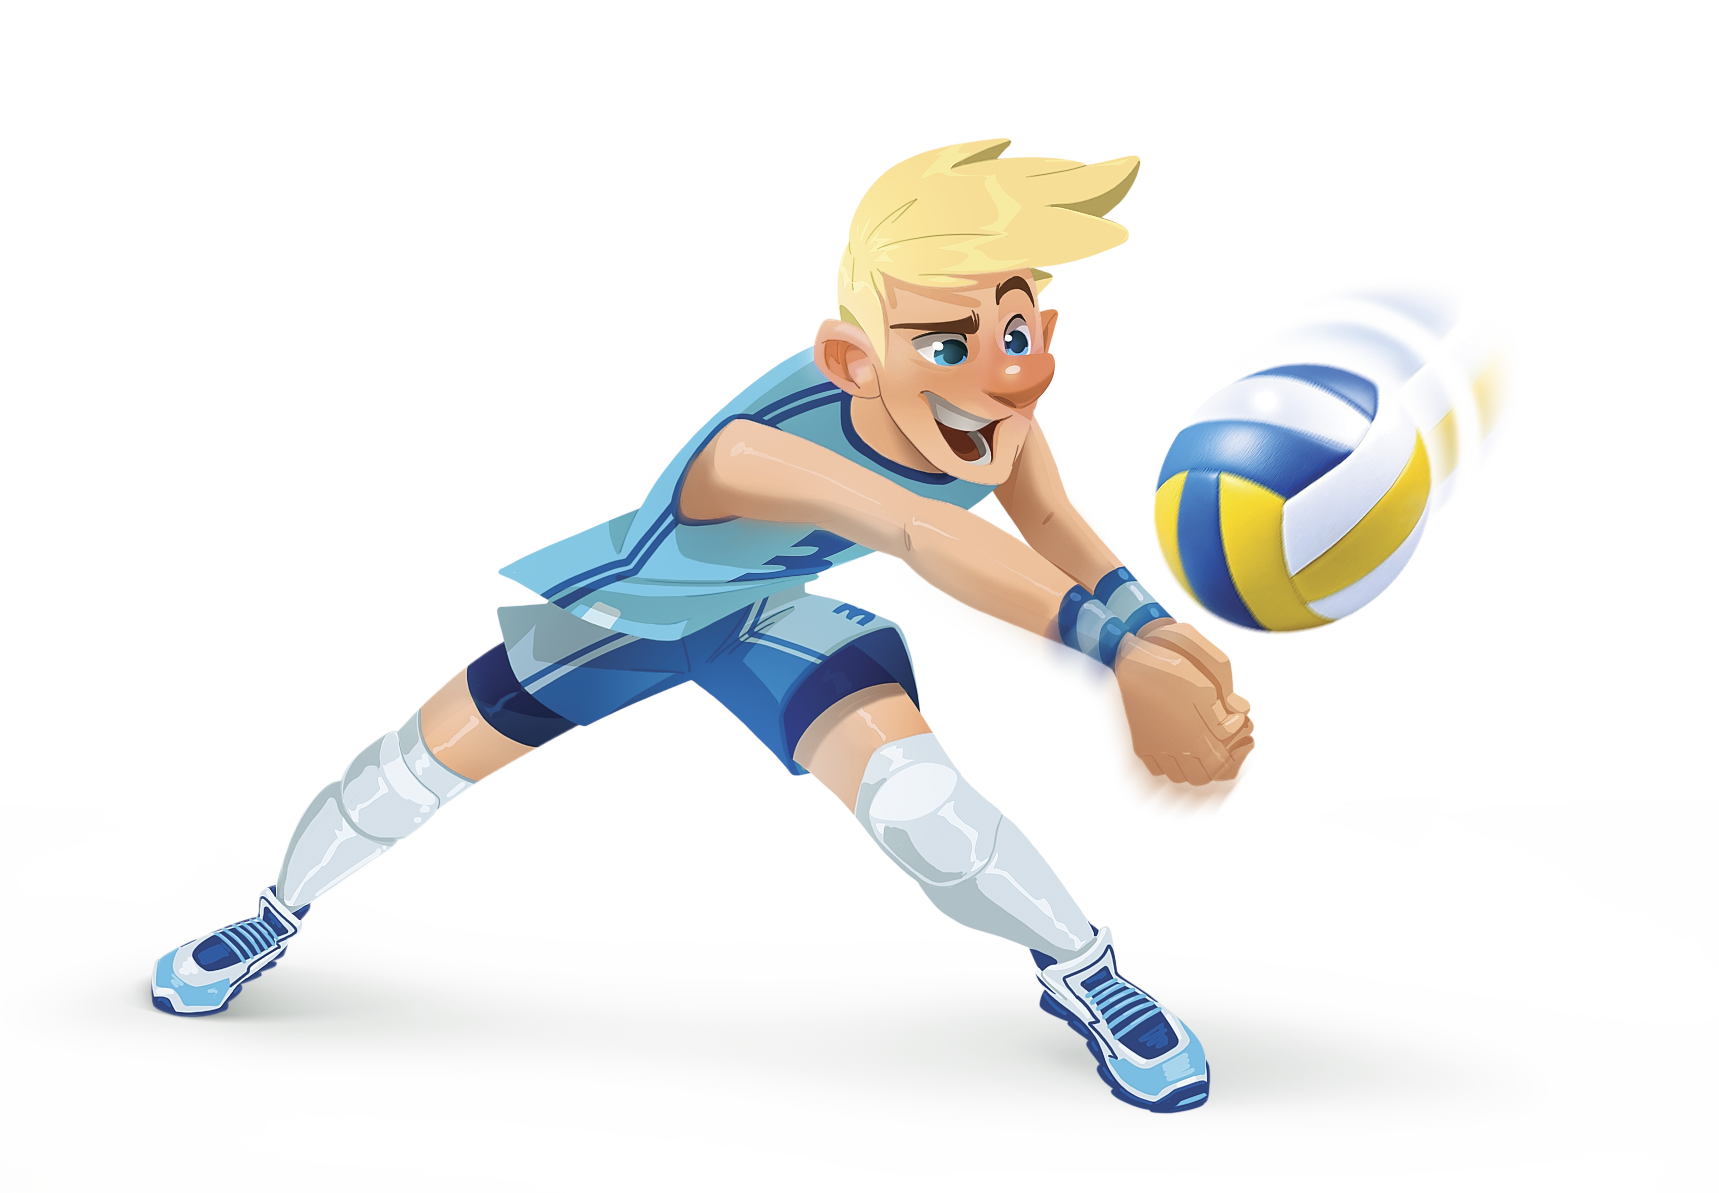 Ilustração. Rapaz com uniforme esportivo azul rebatendo bola de vôlei